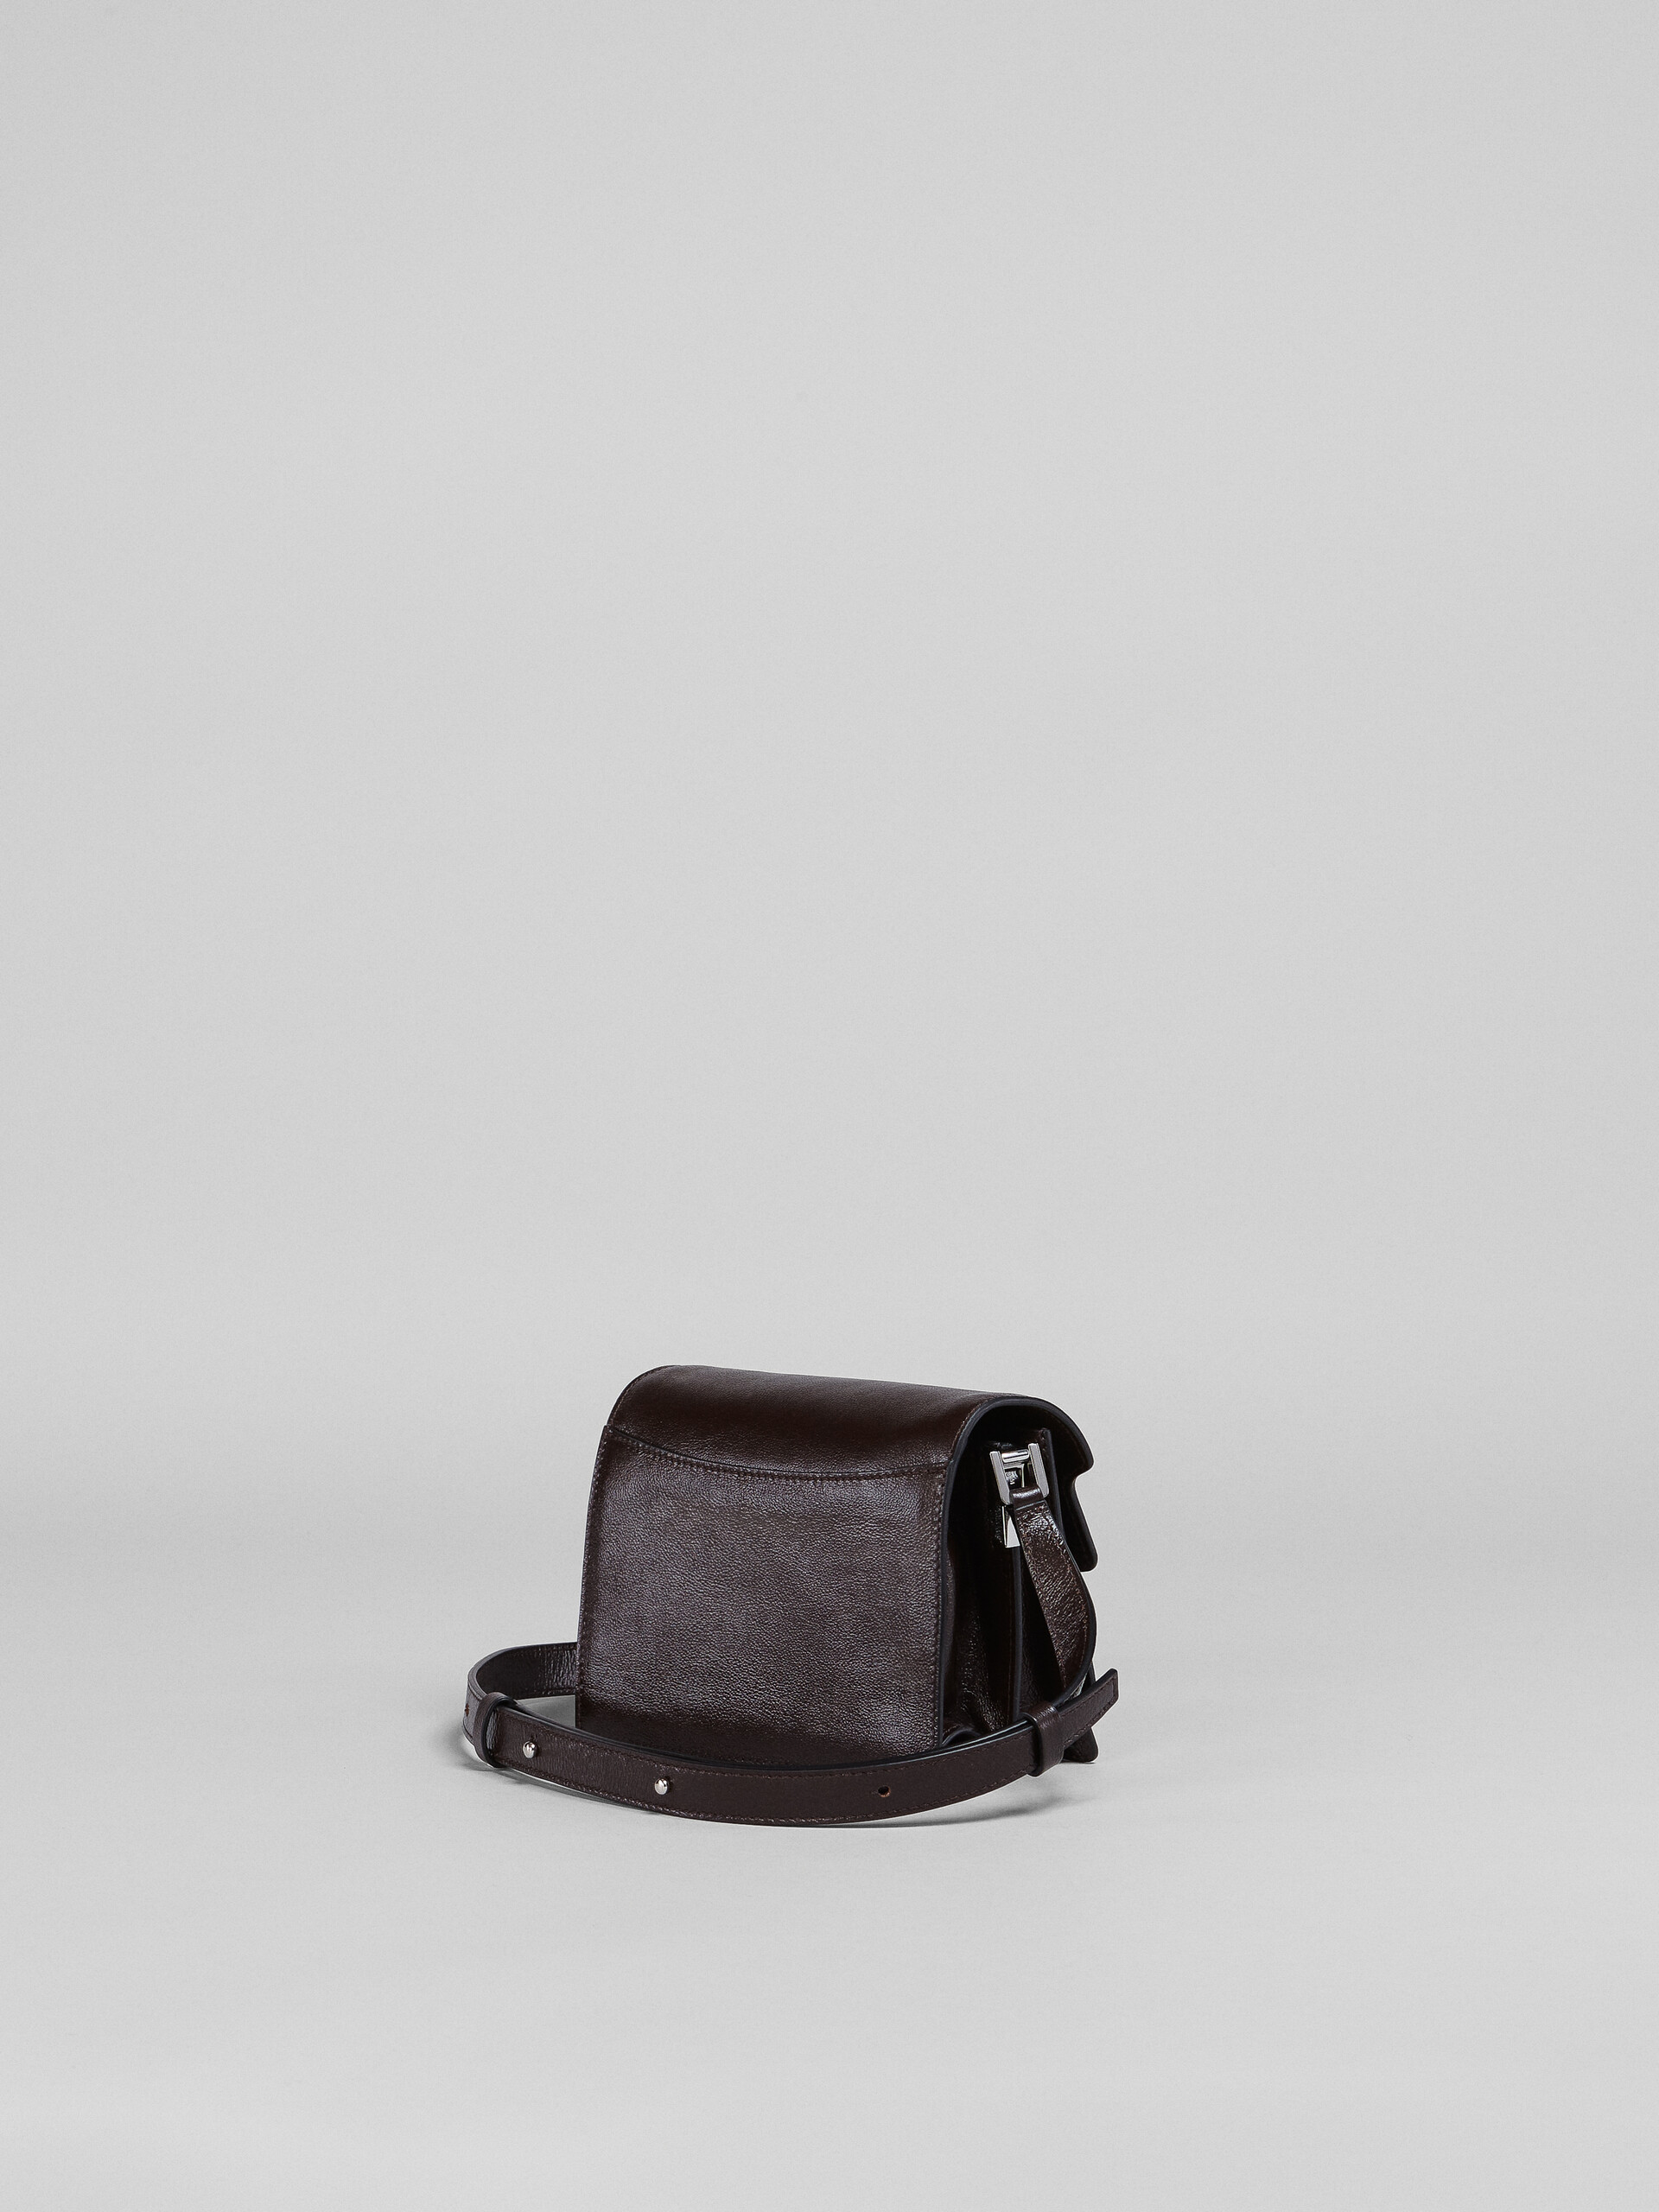 TRUNK SOFT mini bag in brown leather - Shoulder Bag - Image 3